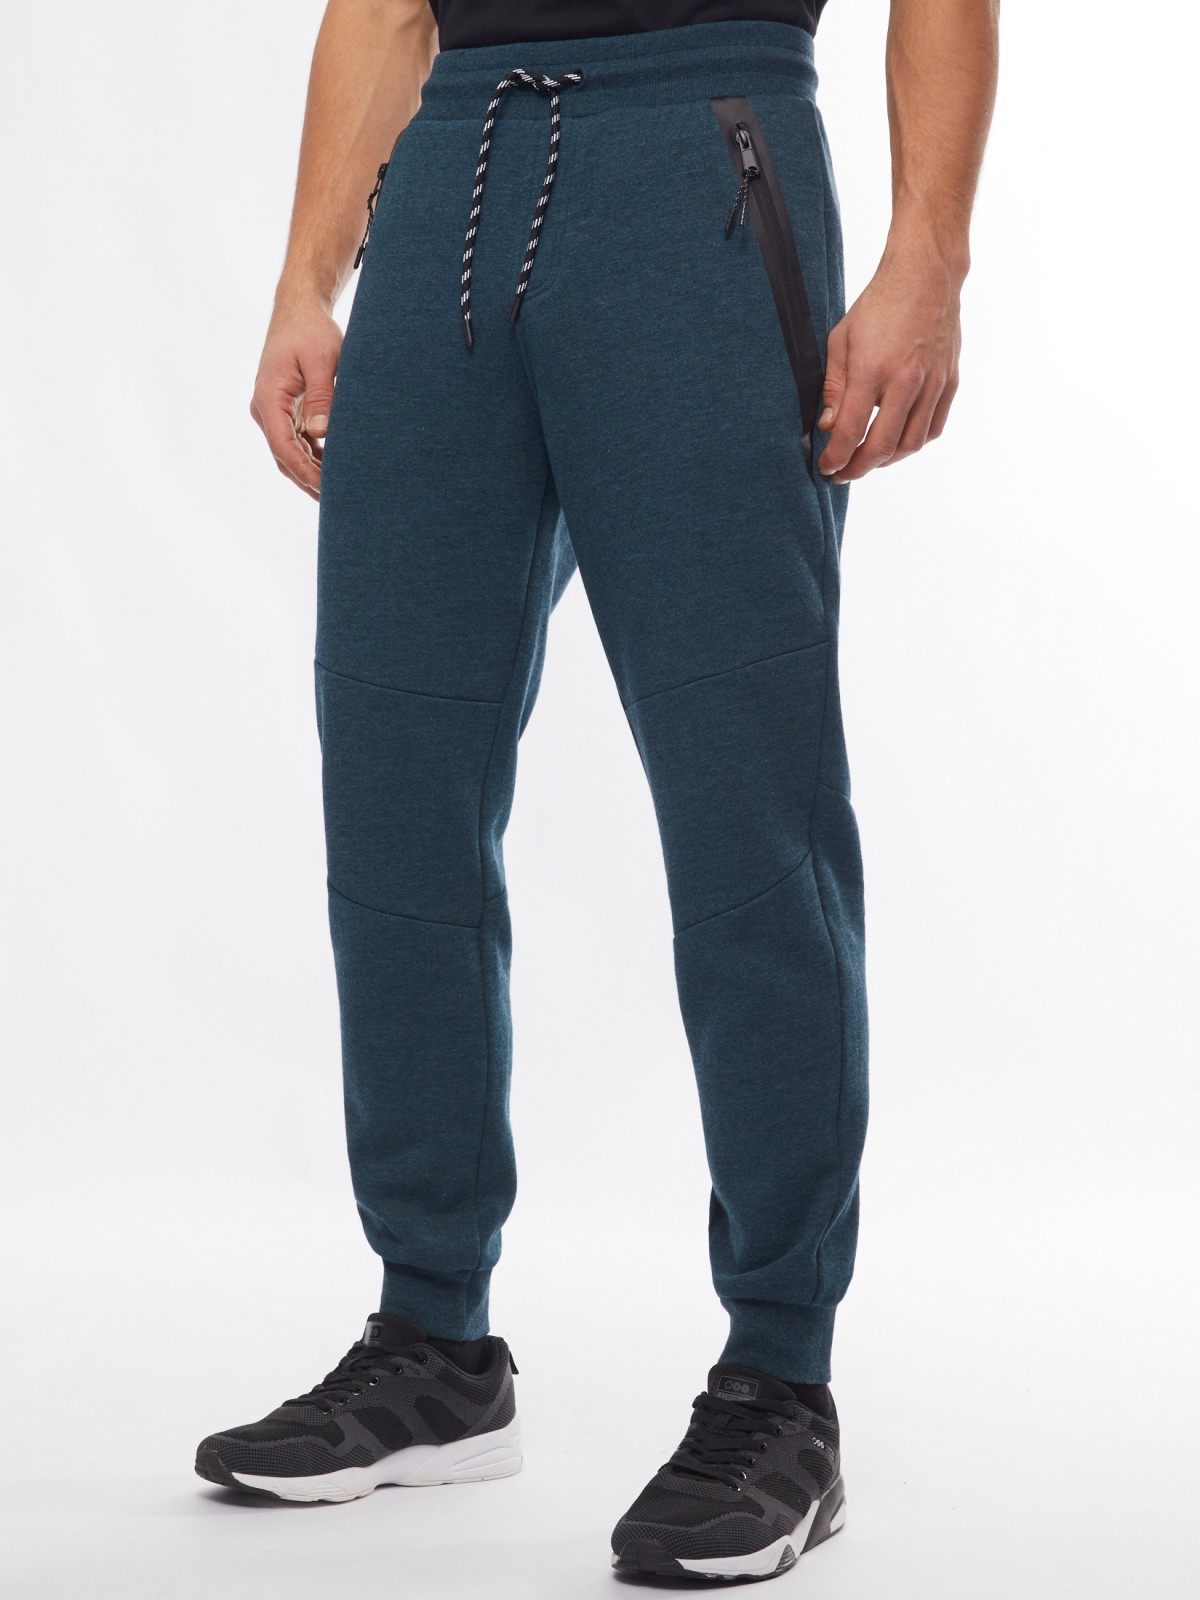 Утеплённые трикотажные брюки-джоггеры в спортивном стиле zolla 014117660063, цвет темно-бирюзовый, размер M - фото 2